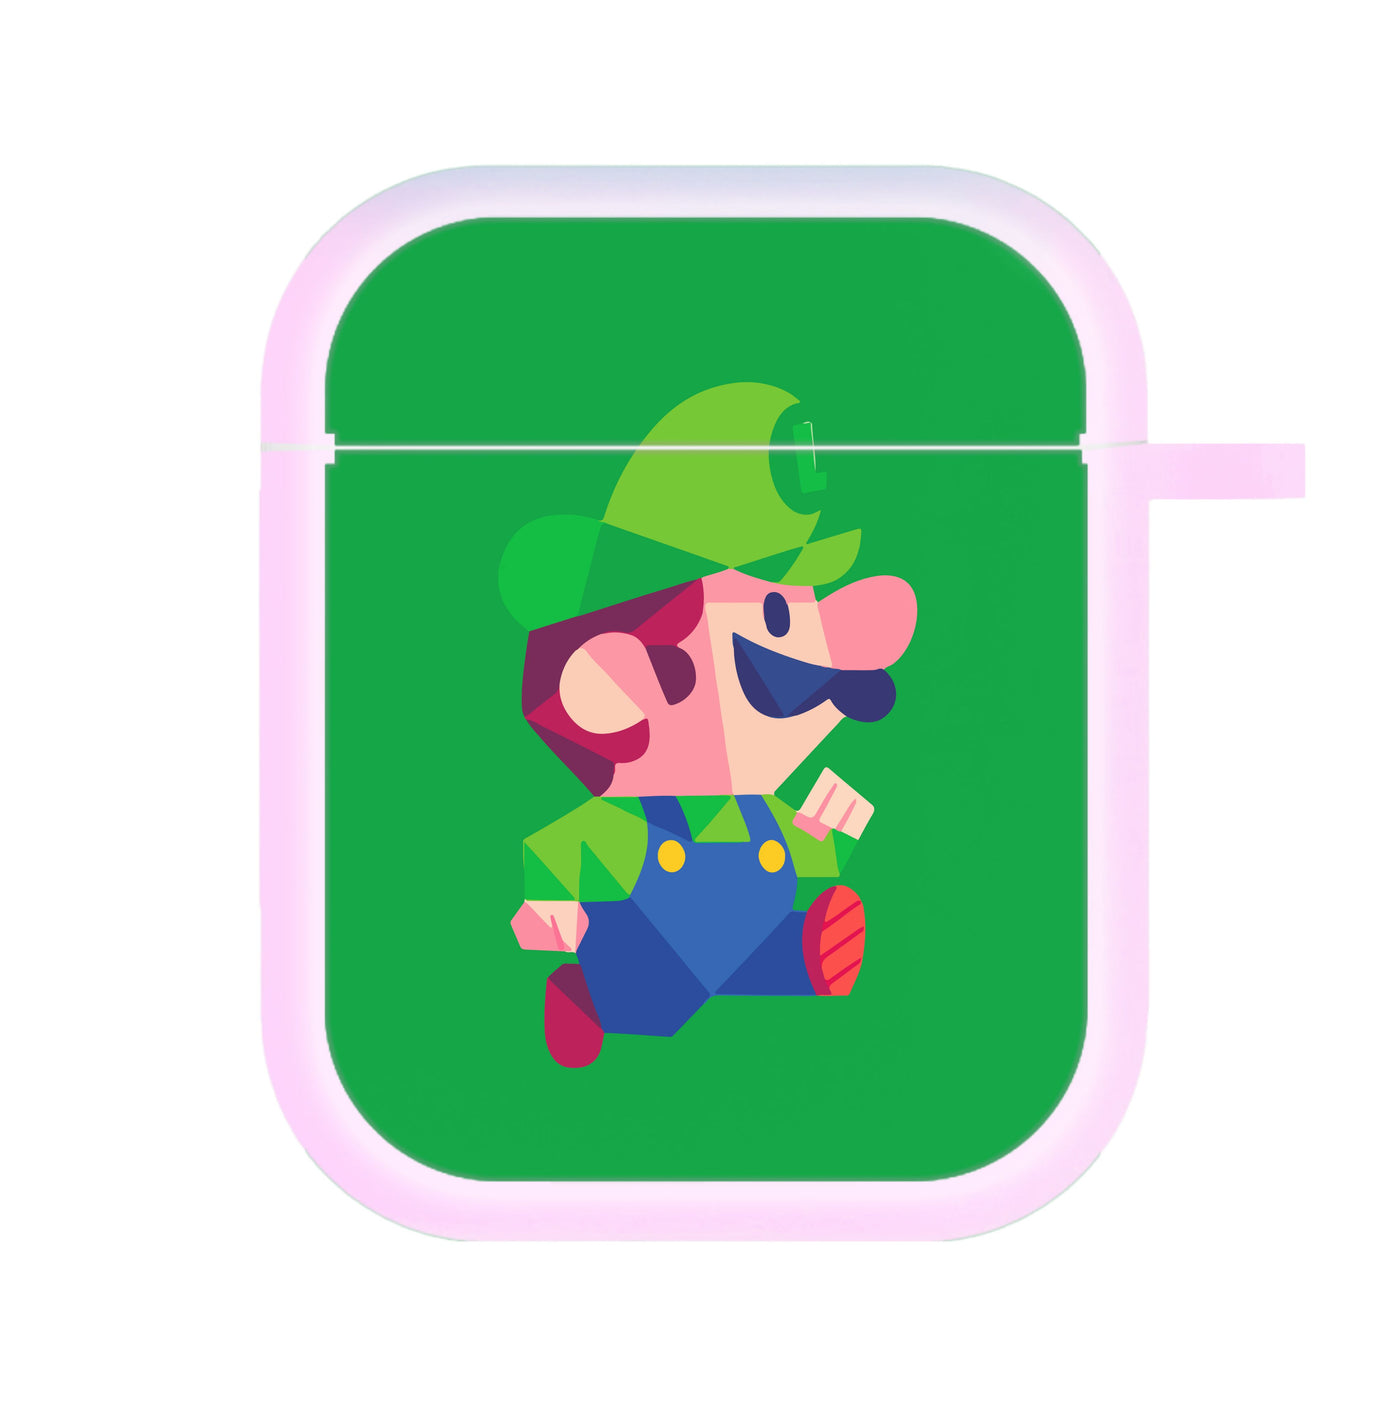 Running Luigi - Mario AirPods Case